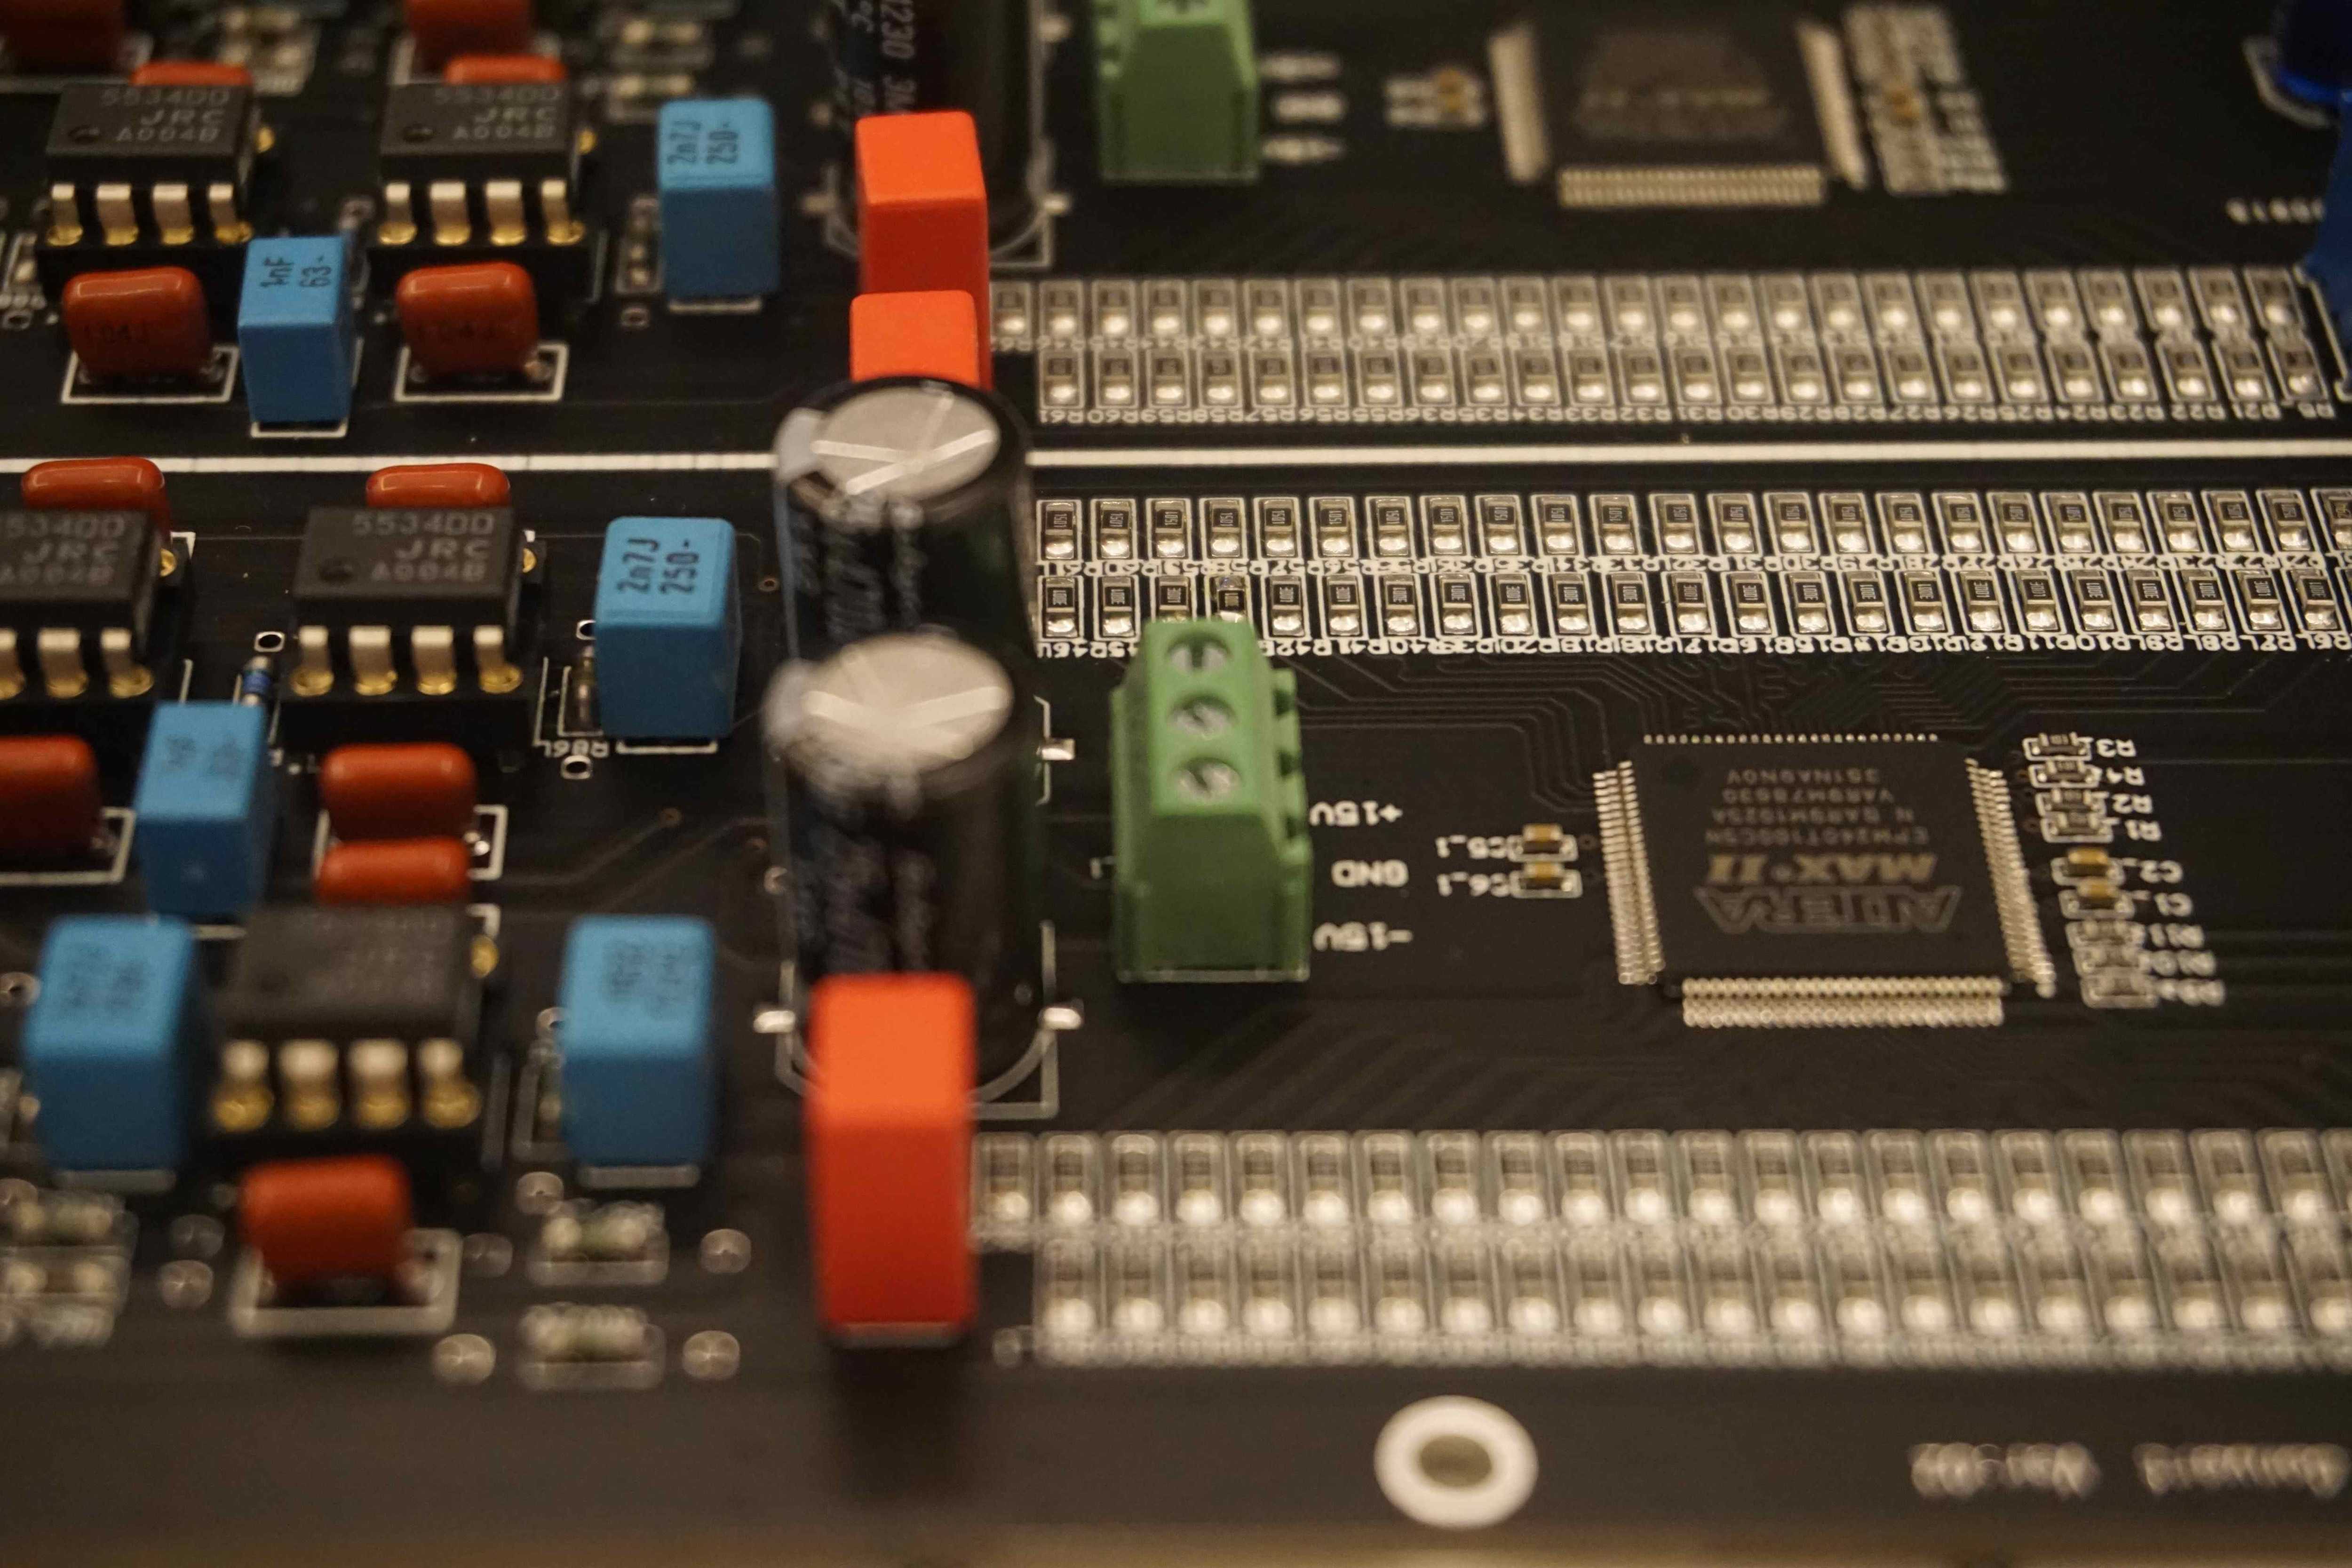 Восточноазиатская компания iBasso представила флагманский мобильный аудиоплеер iBasso DX300 Гаджет оснащен четырьмя ЦАПами Cirrus Logic CS43198, которые создают восемь каналов, работающих попарно в балансном режиме Контроллер FPGA собственной разработки с